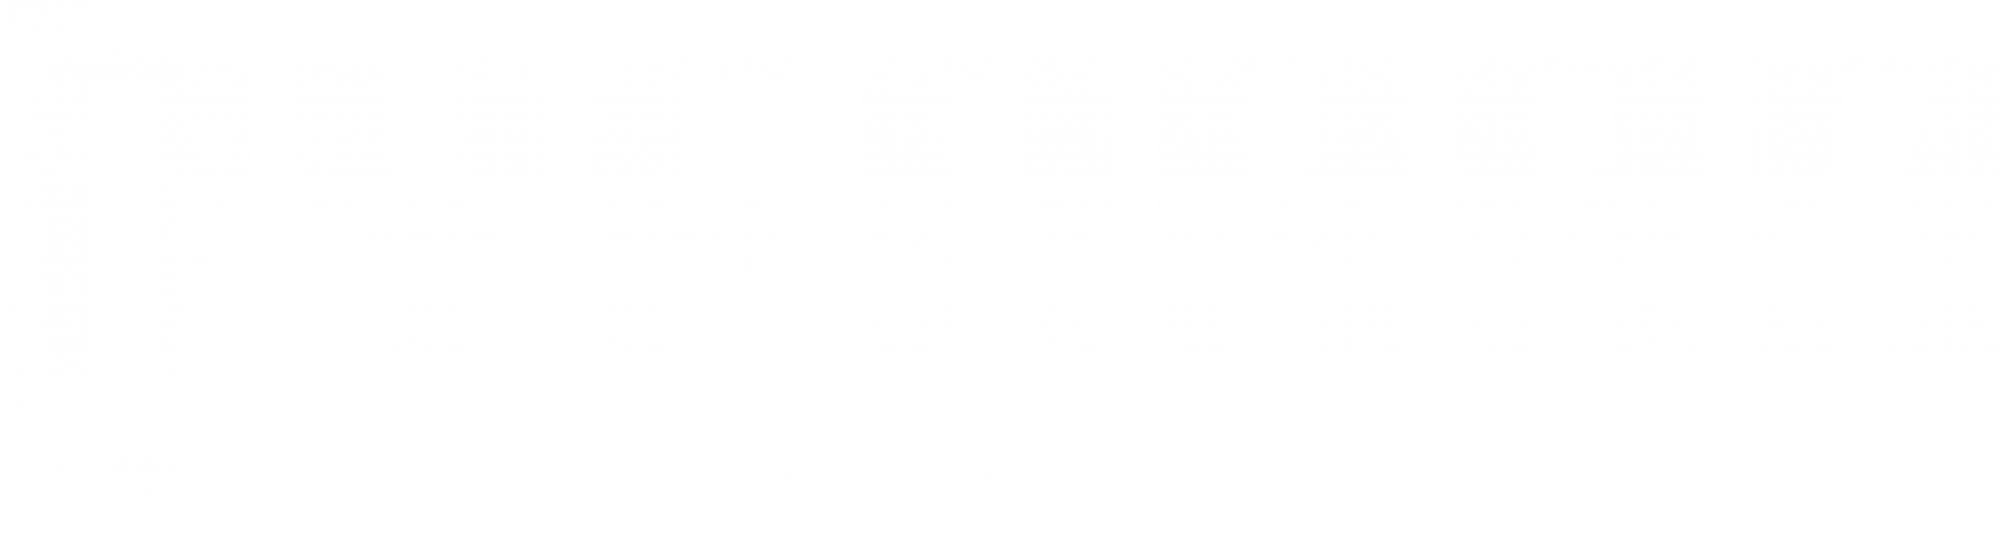 Dyedbro - white logo